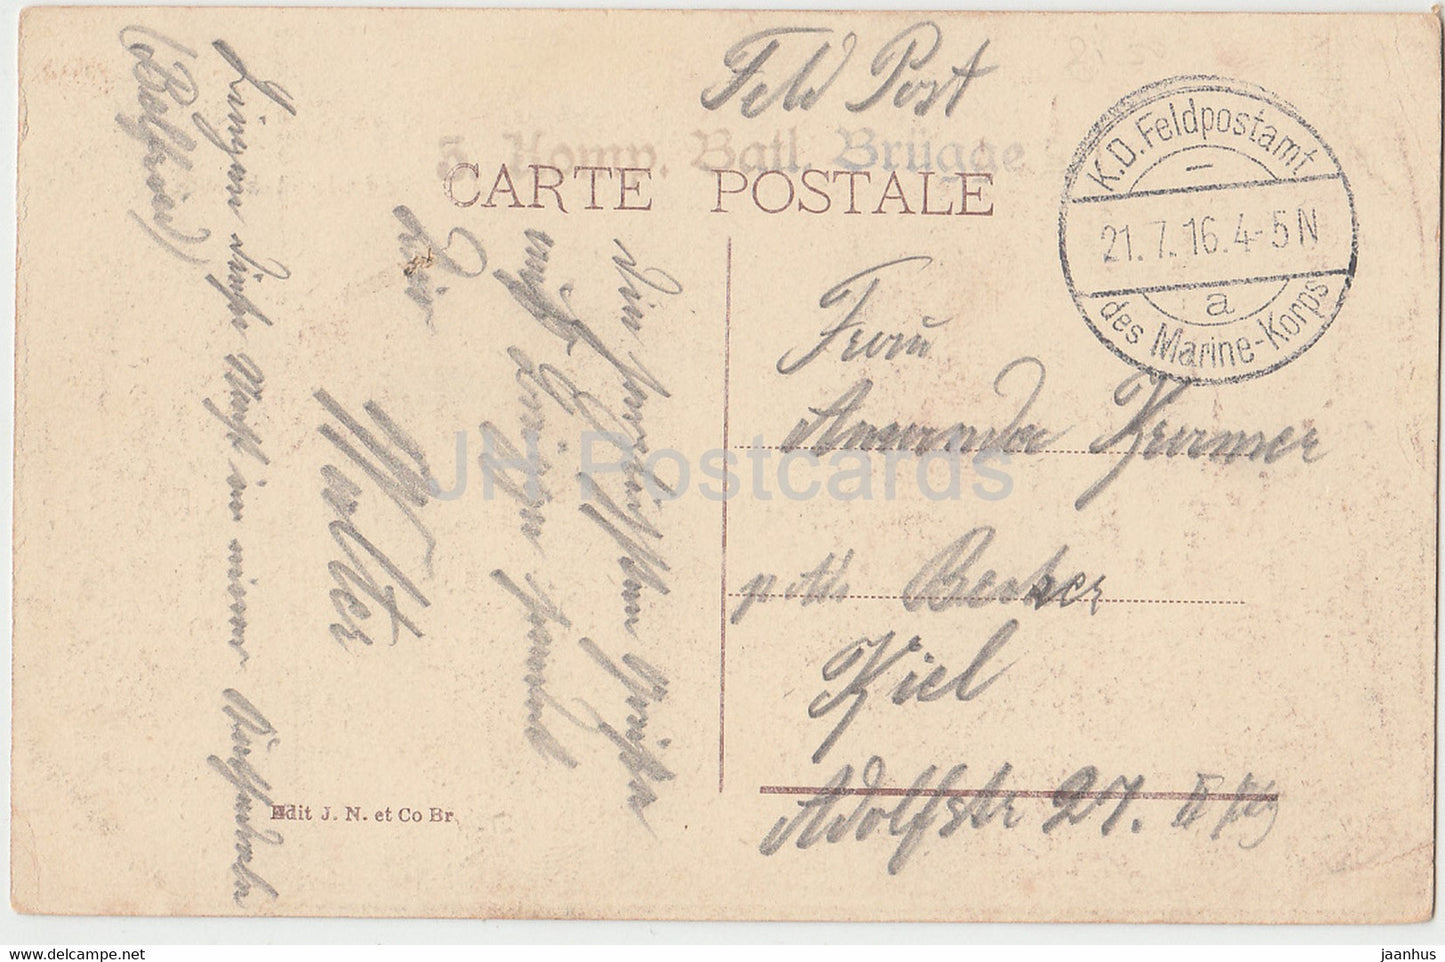 Gand - Gent - La Cathedrale St Bavon - cathédrale - 4 Komp Batl Brugge - Feldpost - carte postale ancienne - 1916 - Belgique - d'occasion